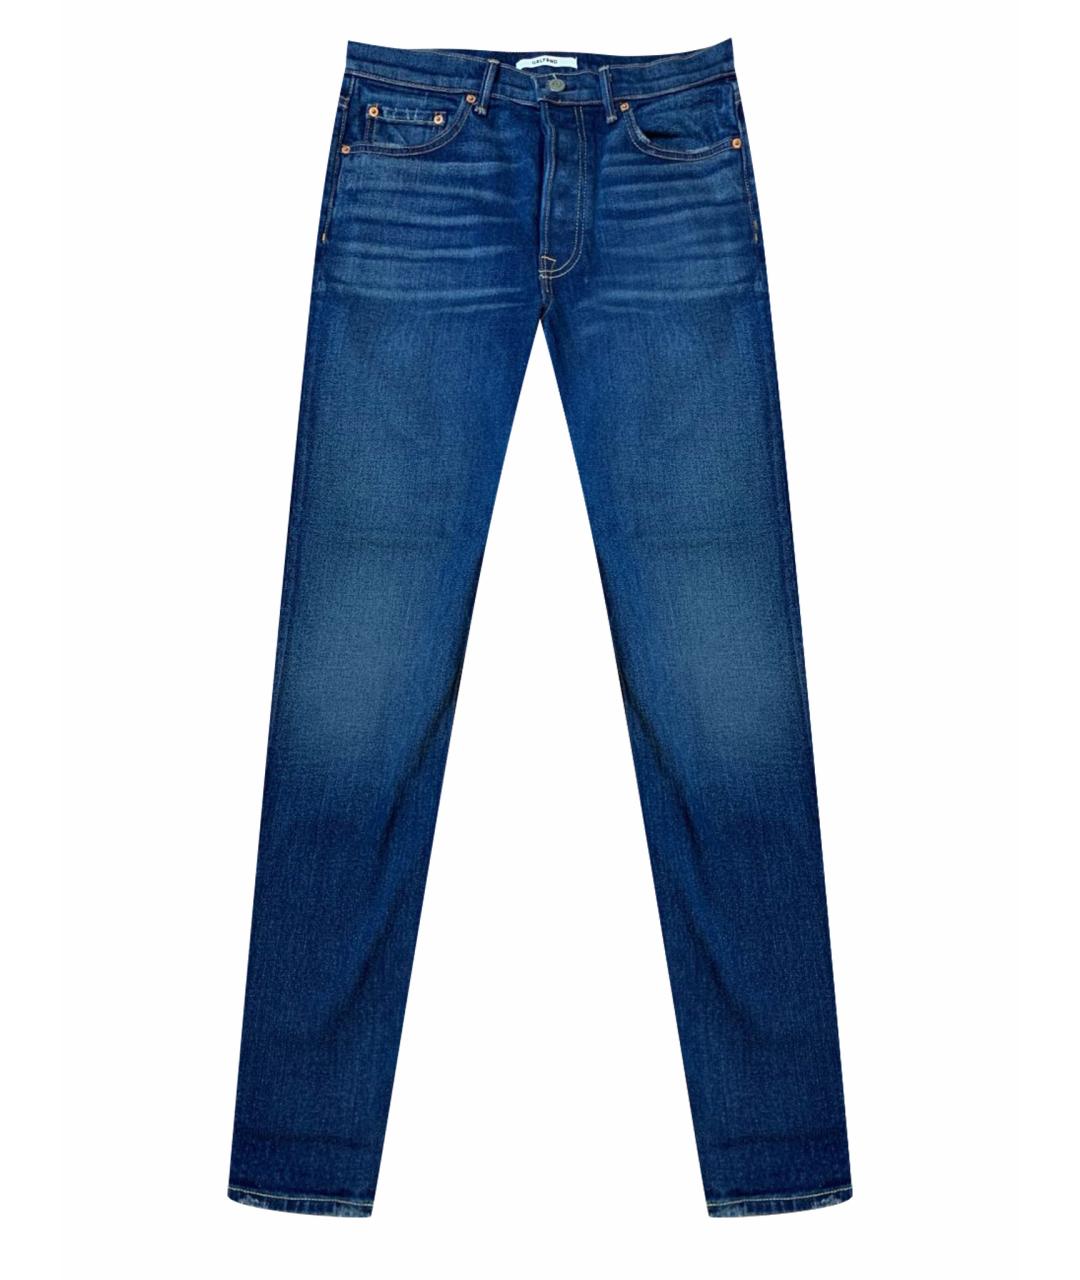 GRLFRND Темно-синие хлопковые джинсы слим, фото 1